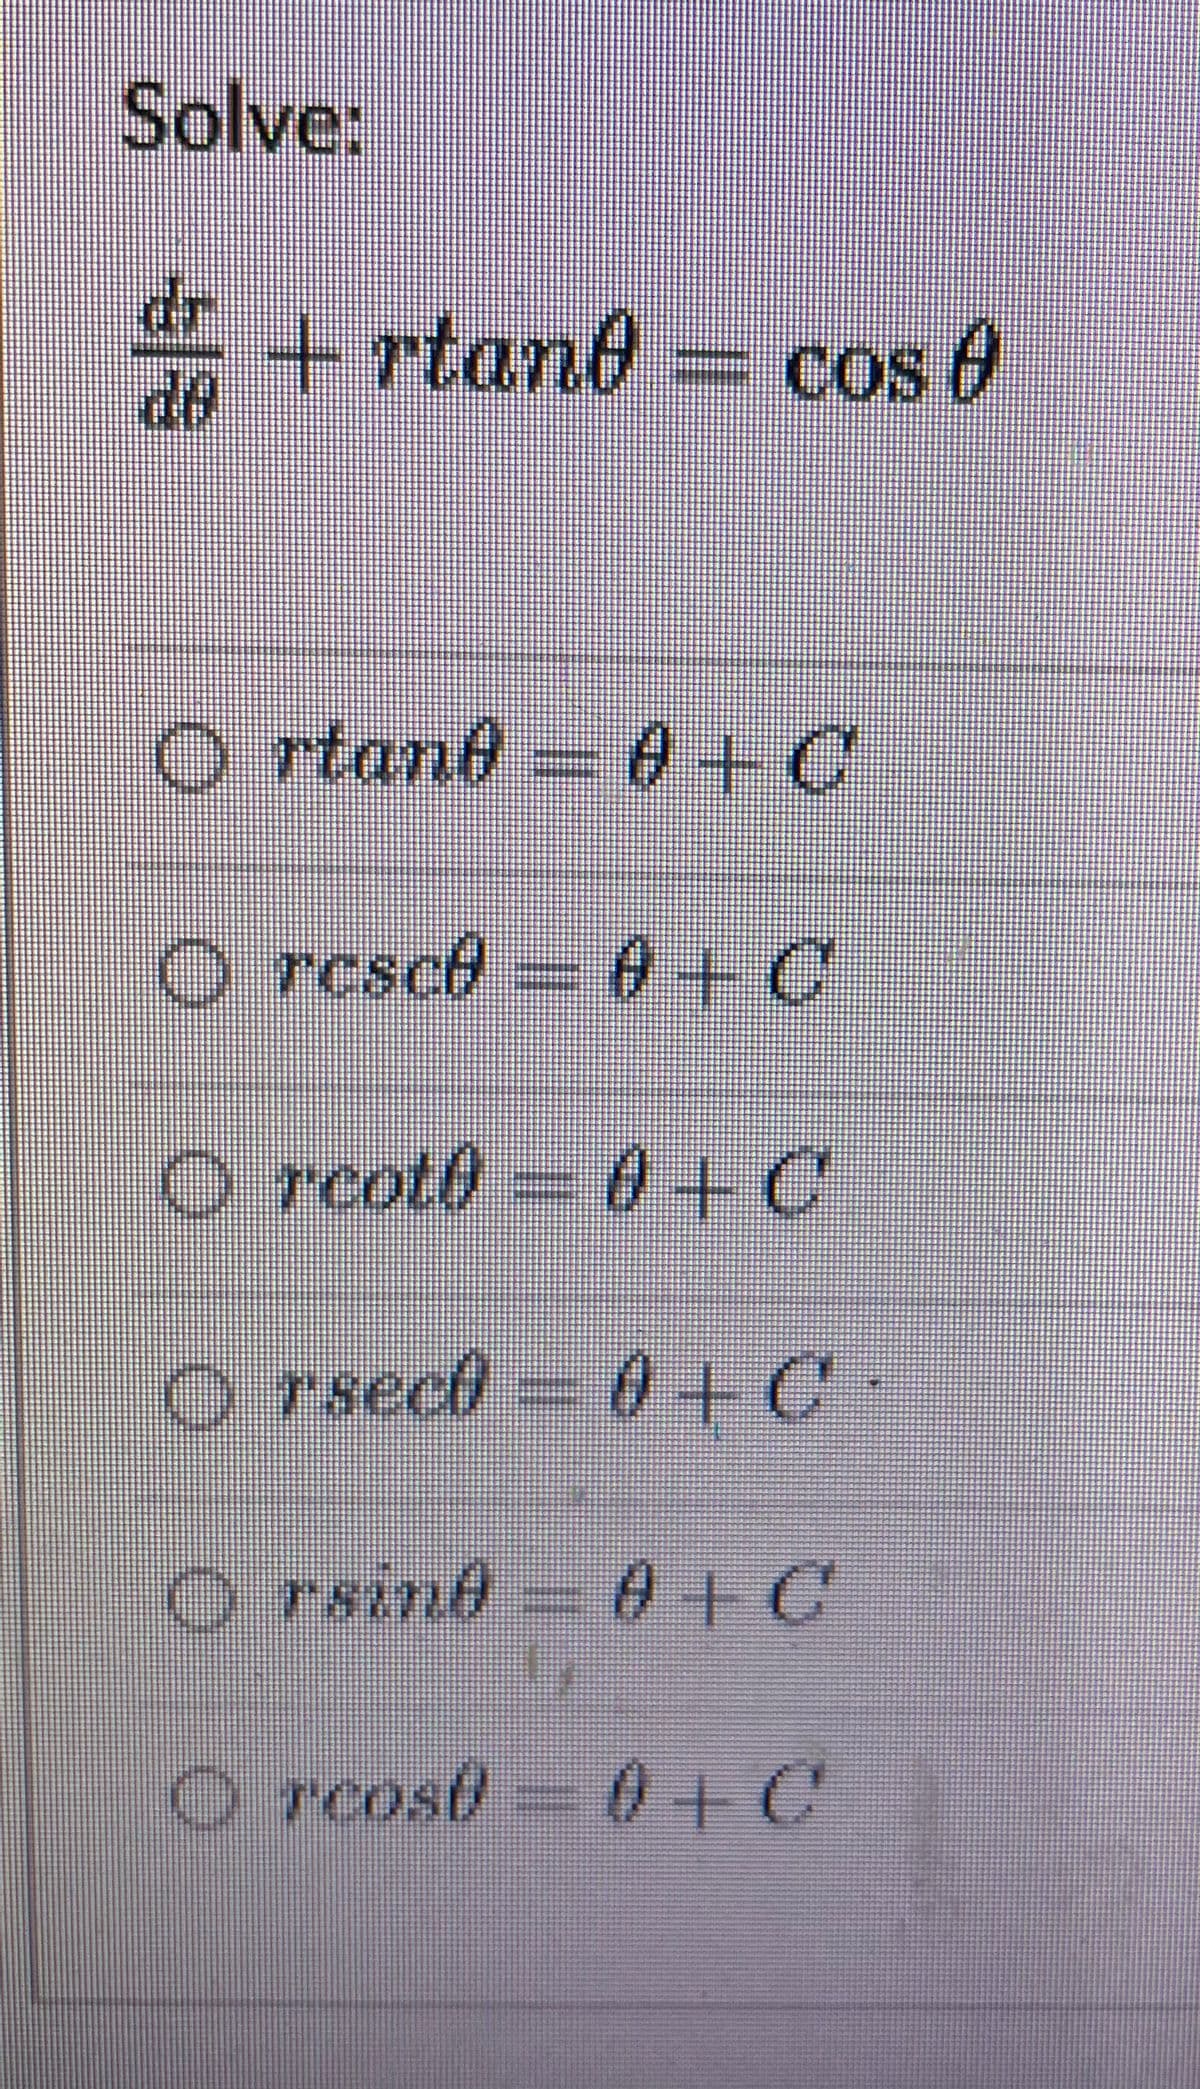 Solve:
dr
i + rtan0 = cos 0
de
O rtand = 0+C
O rcsce = 0+C
O rcot0 =
0+C
o rsect = 0+C•
O rsind A+C
O rcost = 0+C
